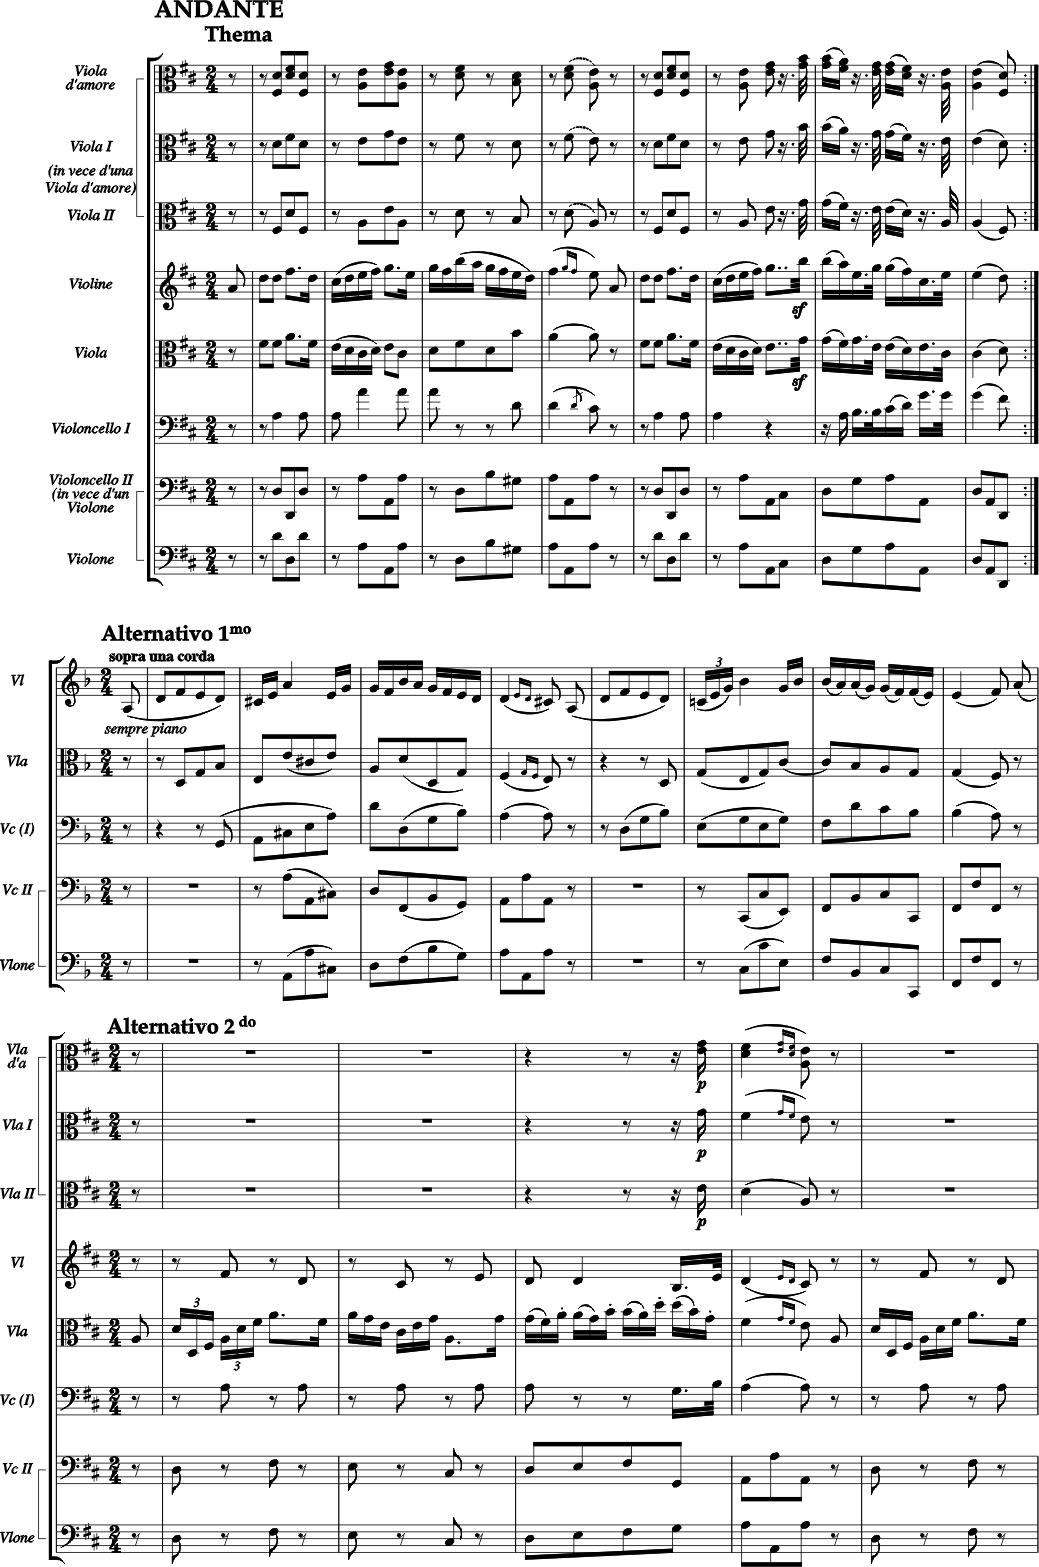 JOSEPH LEOPOLD EDLER VON EYBLER zwei Violen, Violine, Viola, Violoncello und Violone (Violoncello II)